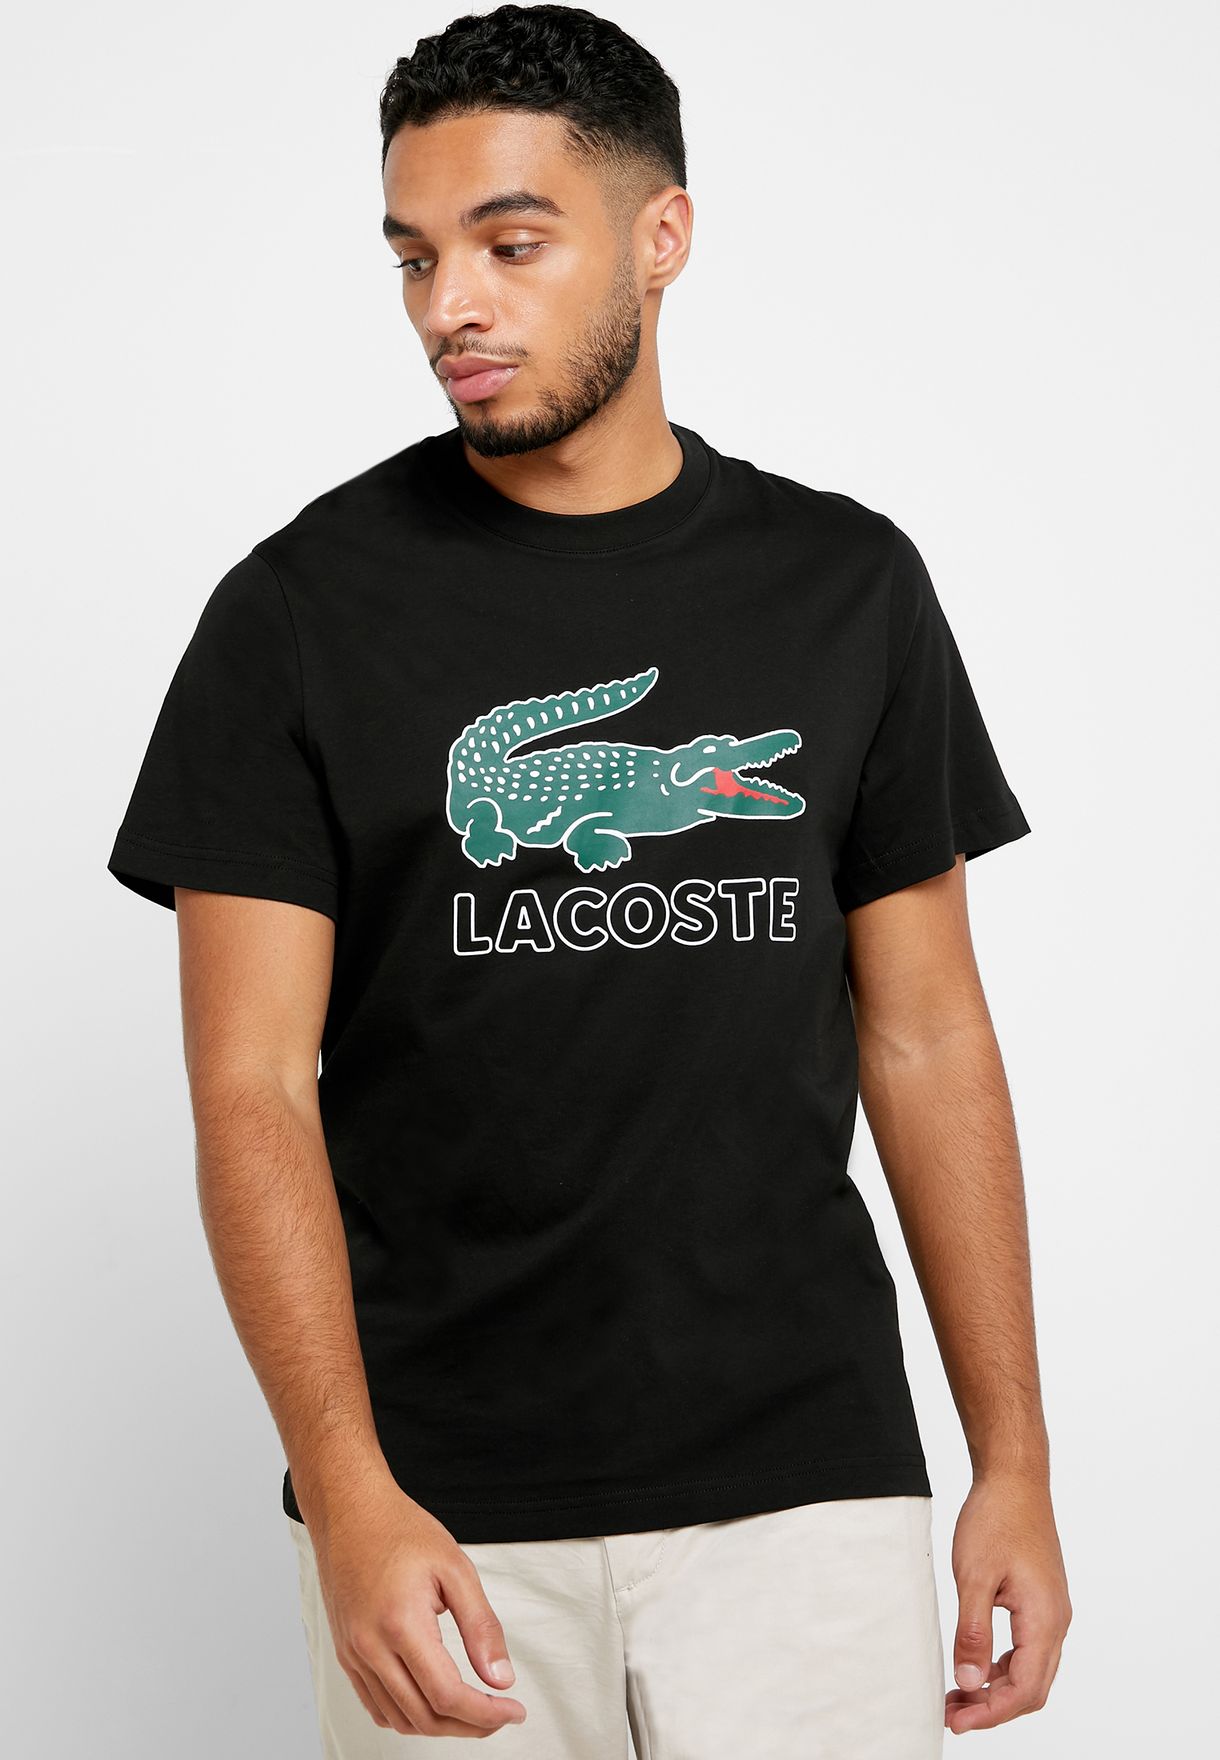 lacoste t shirt large logo